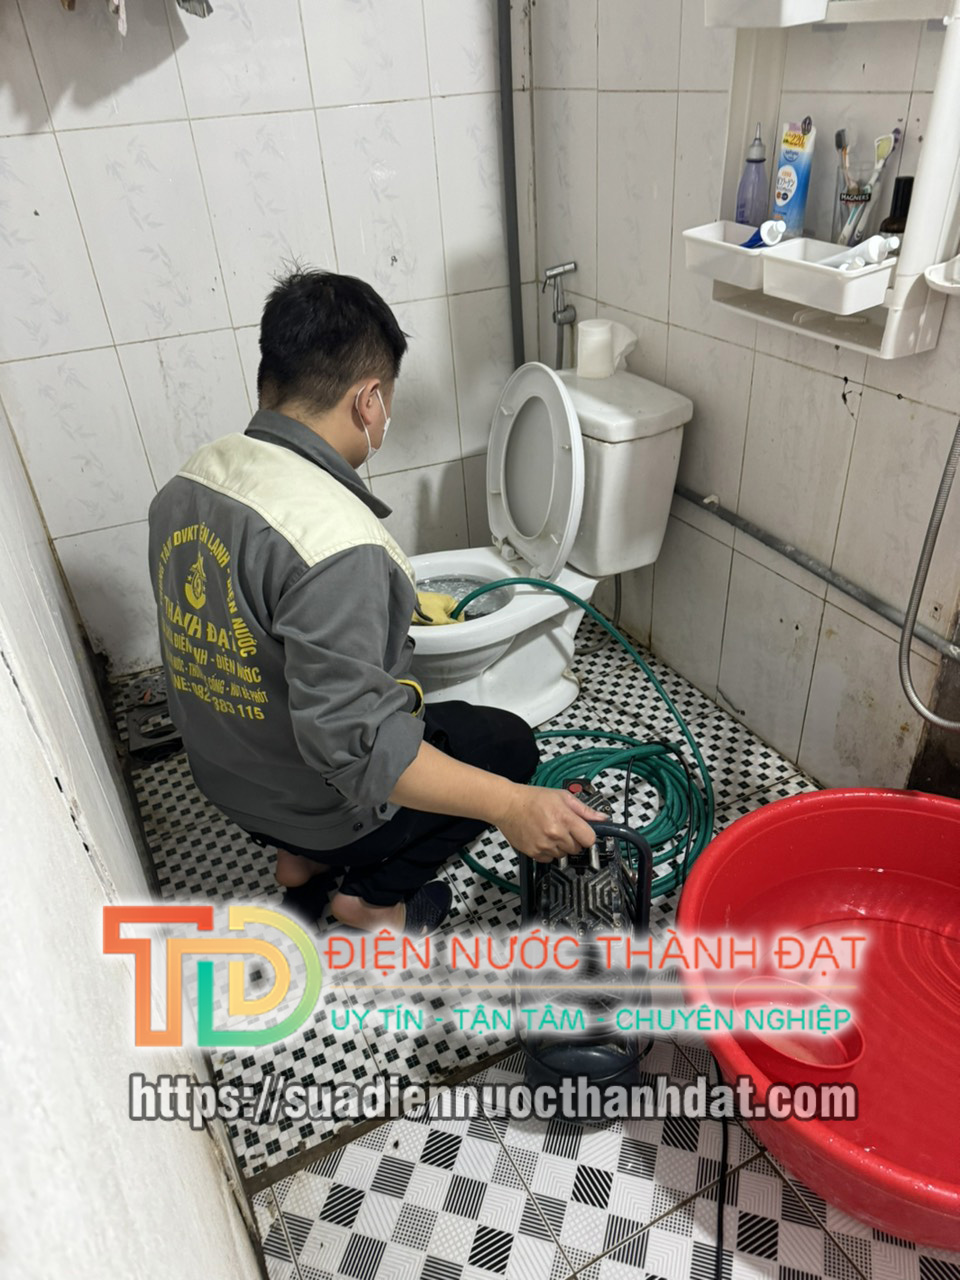 Dịch vụ thông nghẹt bồn cầu tại Nam Định uy tín, chuyên nghiệp 